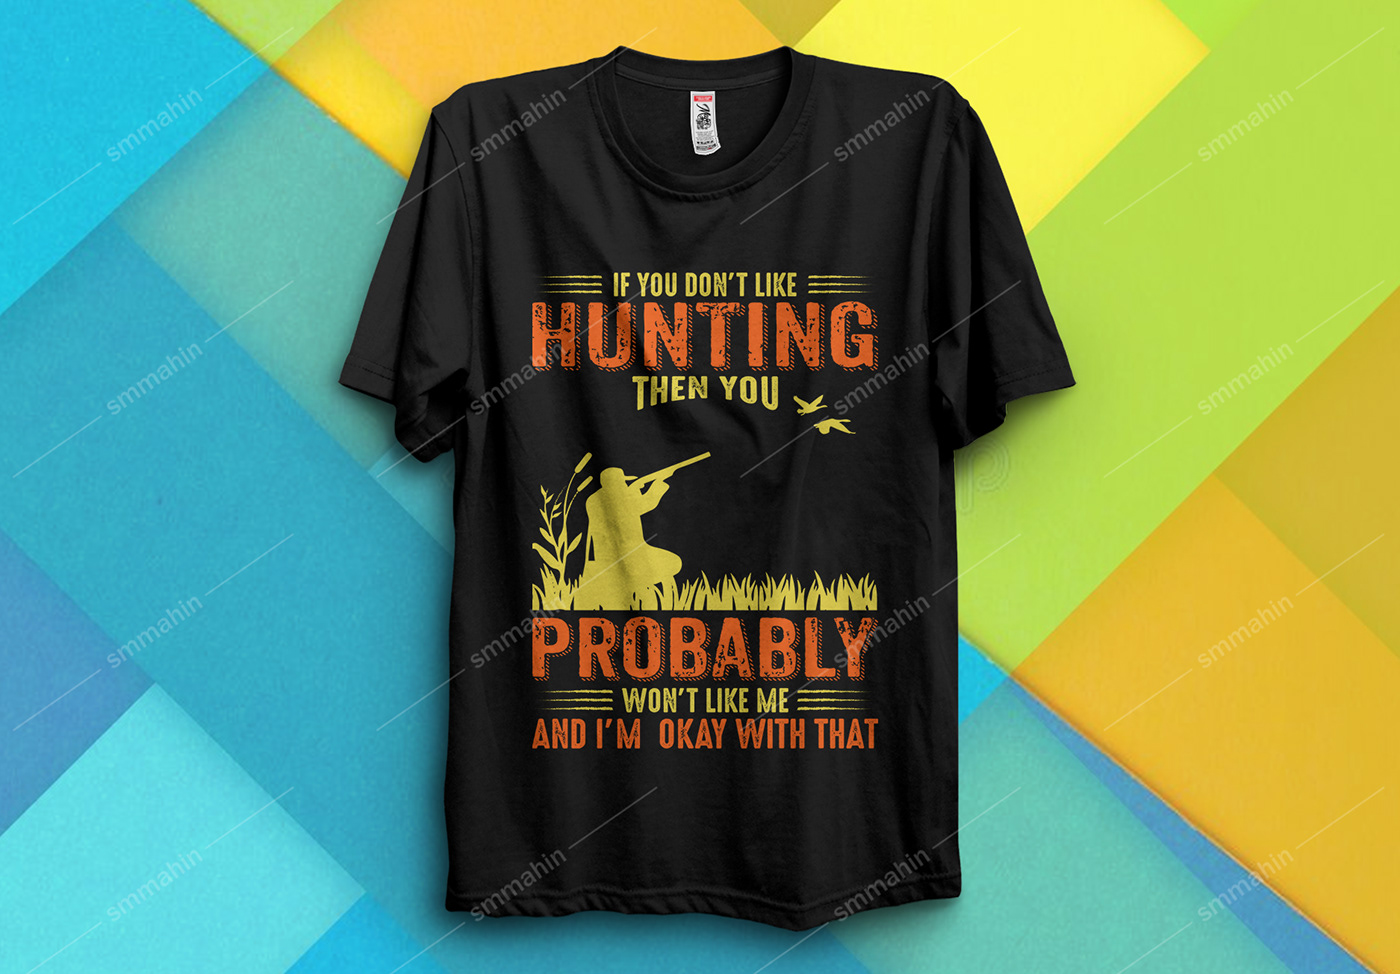 Hunting Hunting t shirt Hunting t shirt design illustrations T Shirt t shirt bunddle t shirt design tshirts typography   Typography T shirt Design